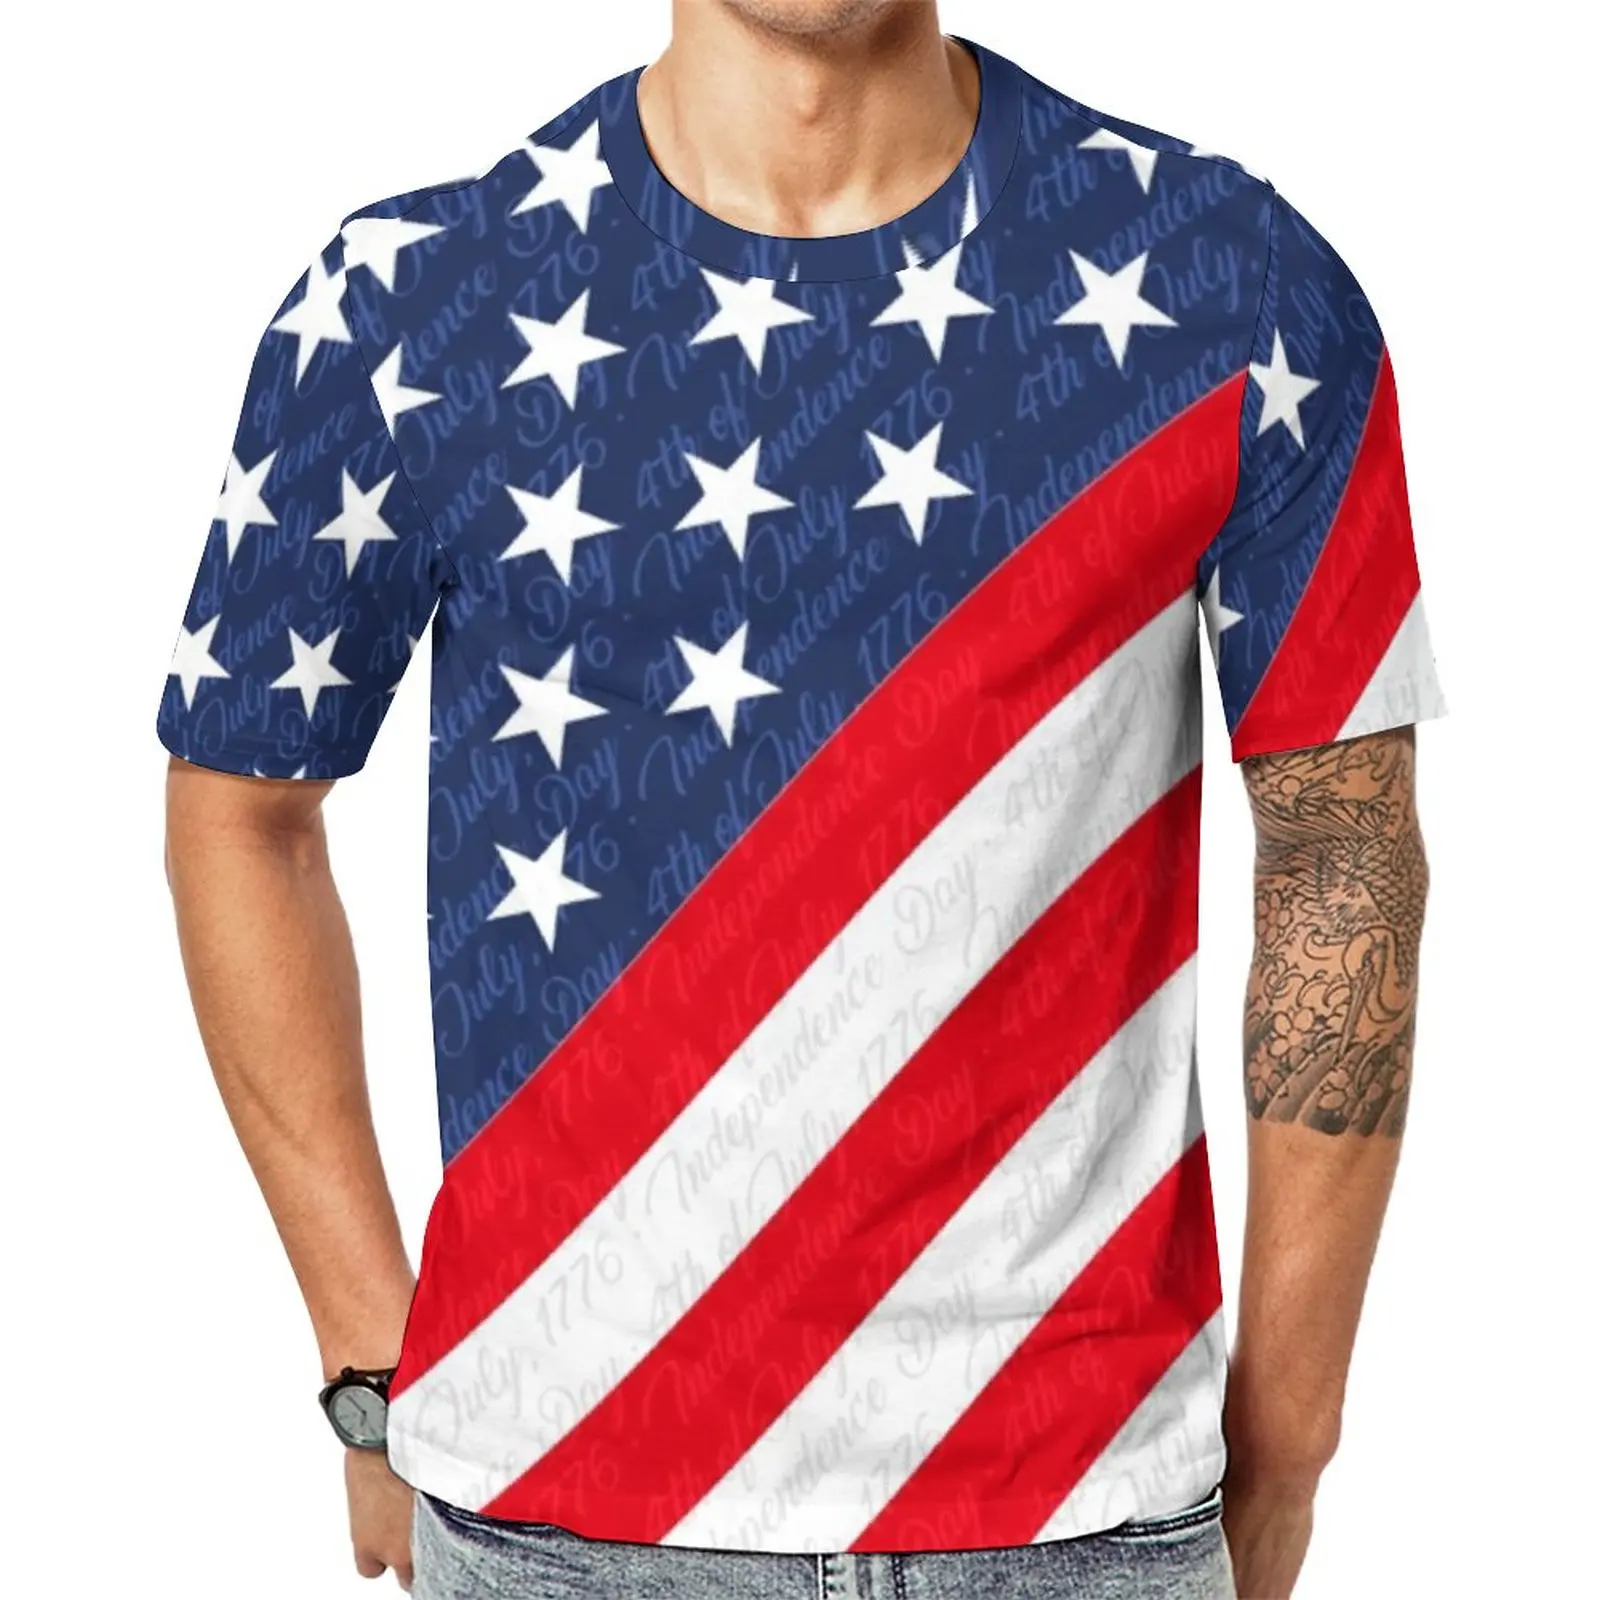 

Футболка с флагом США, популярная футболка на День независимости 4 июля, топы с коротким рукавом и принтом, дешевая пляжная Эстетическая Оде...